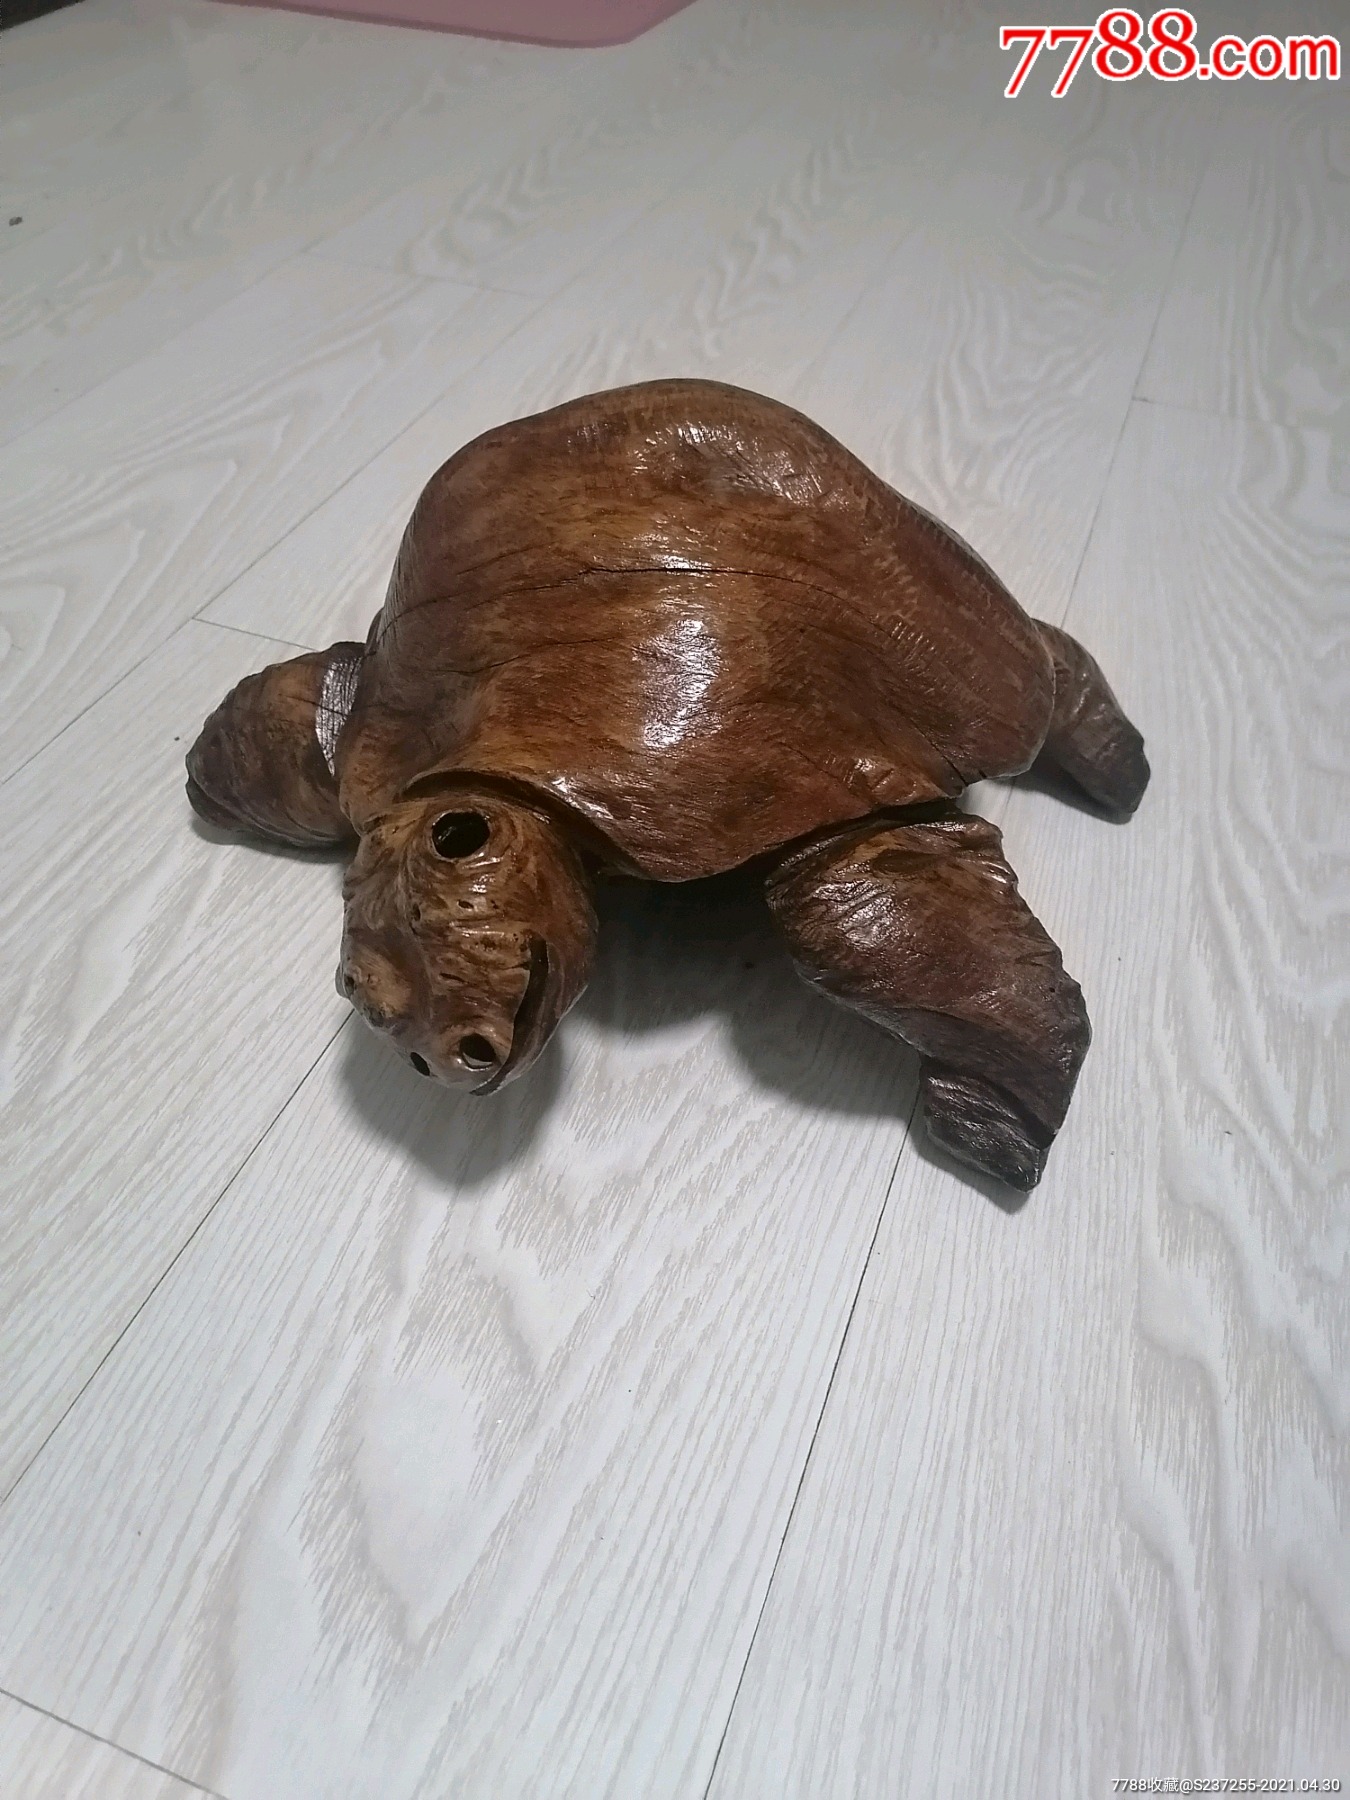 根雕《憨态可掬—龟》,直径35厘米左右,按图发货,纯天然,按图发货